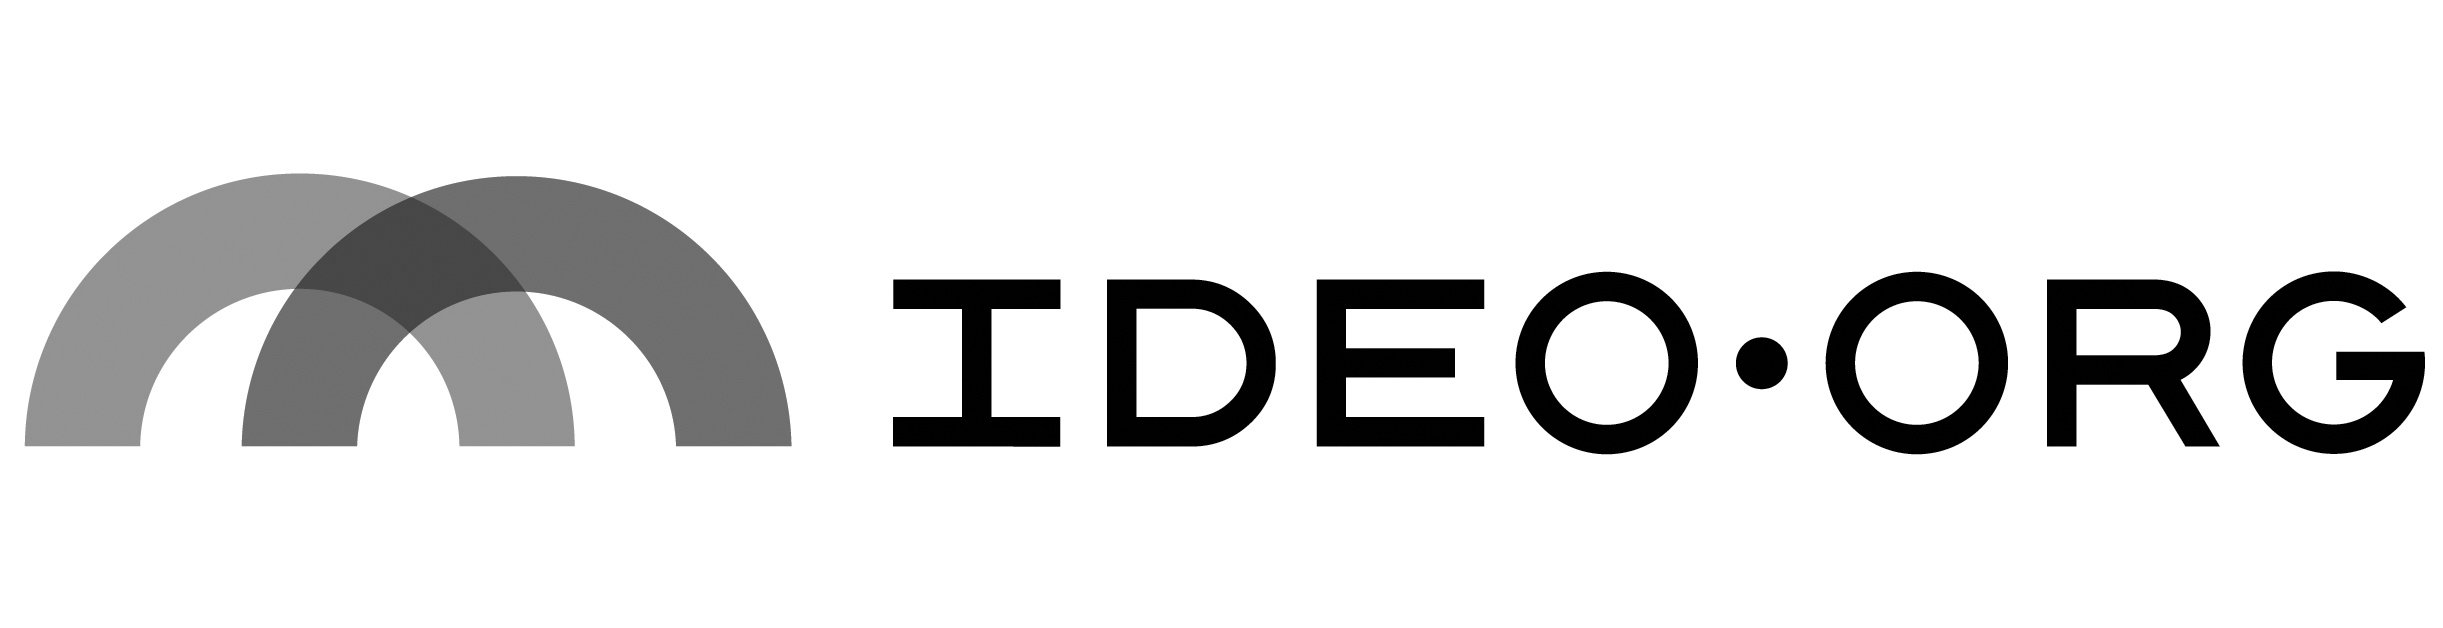 IDEOorg-logo.jpg